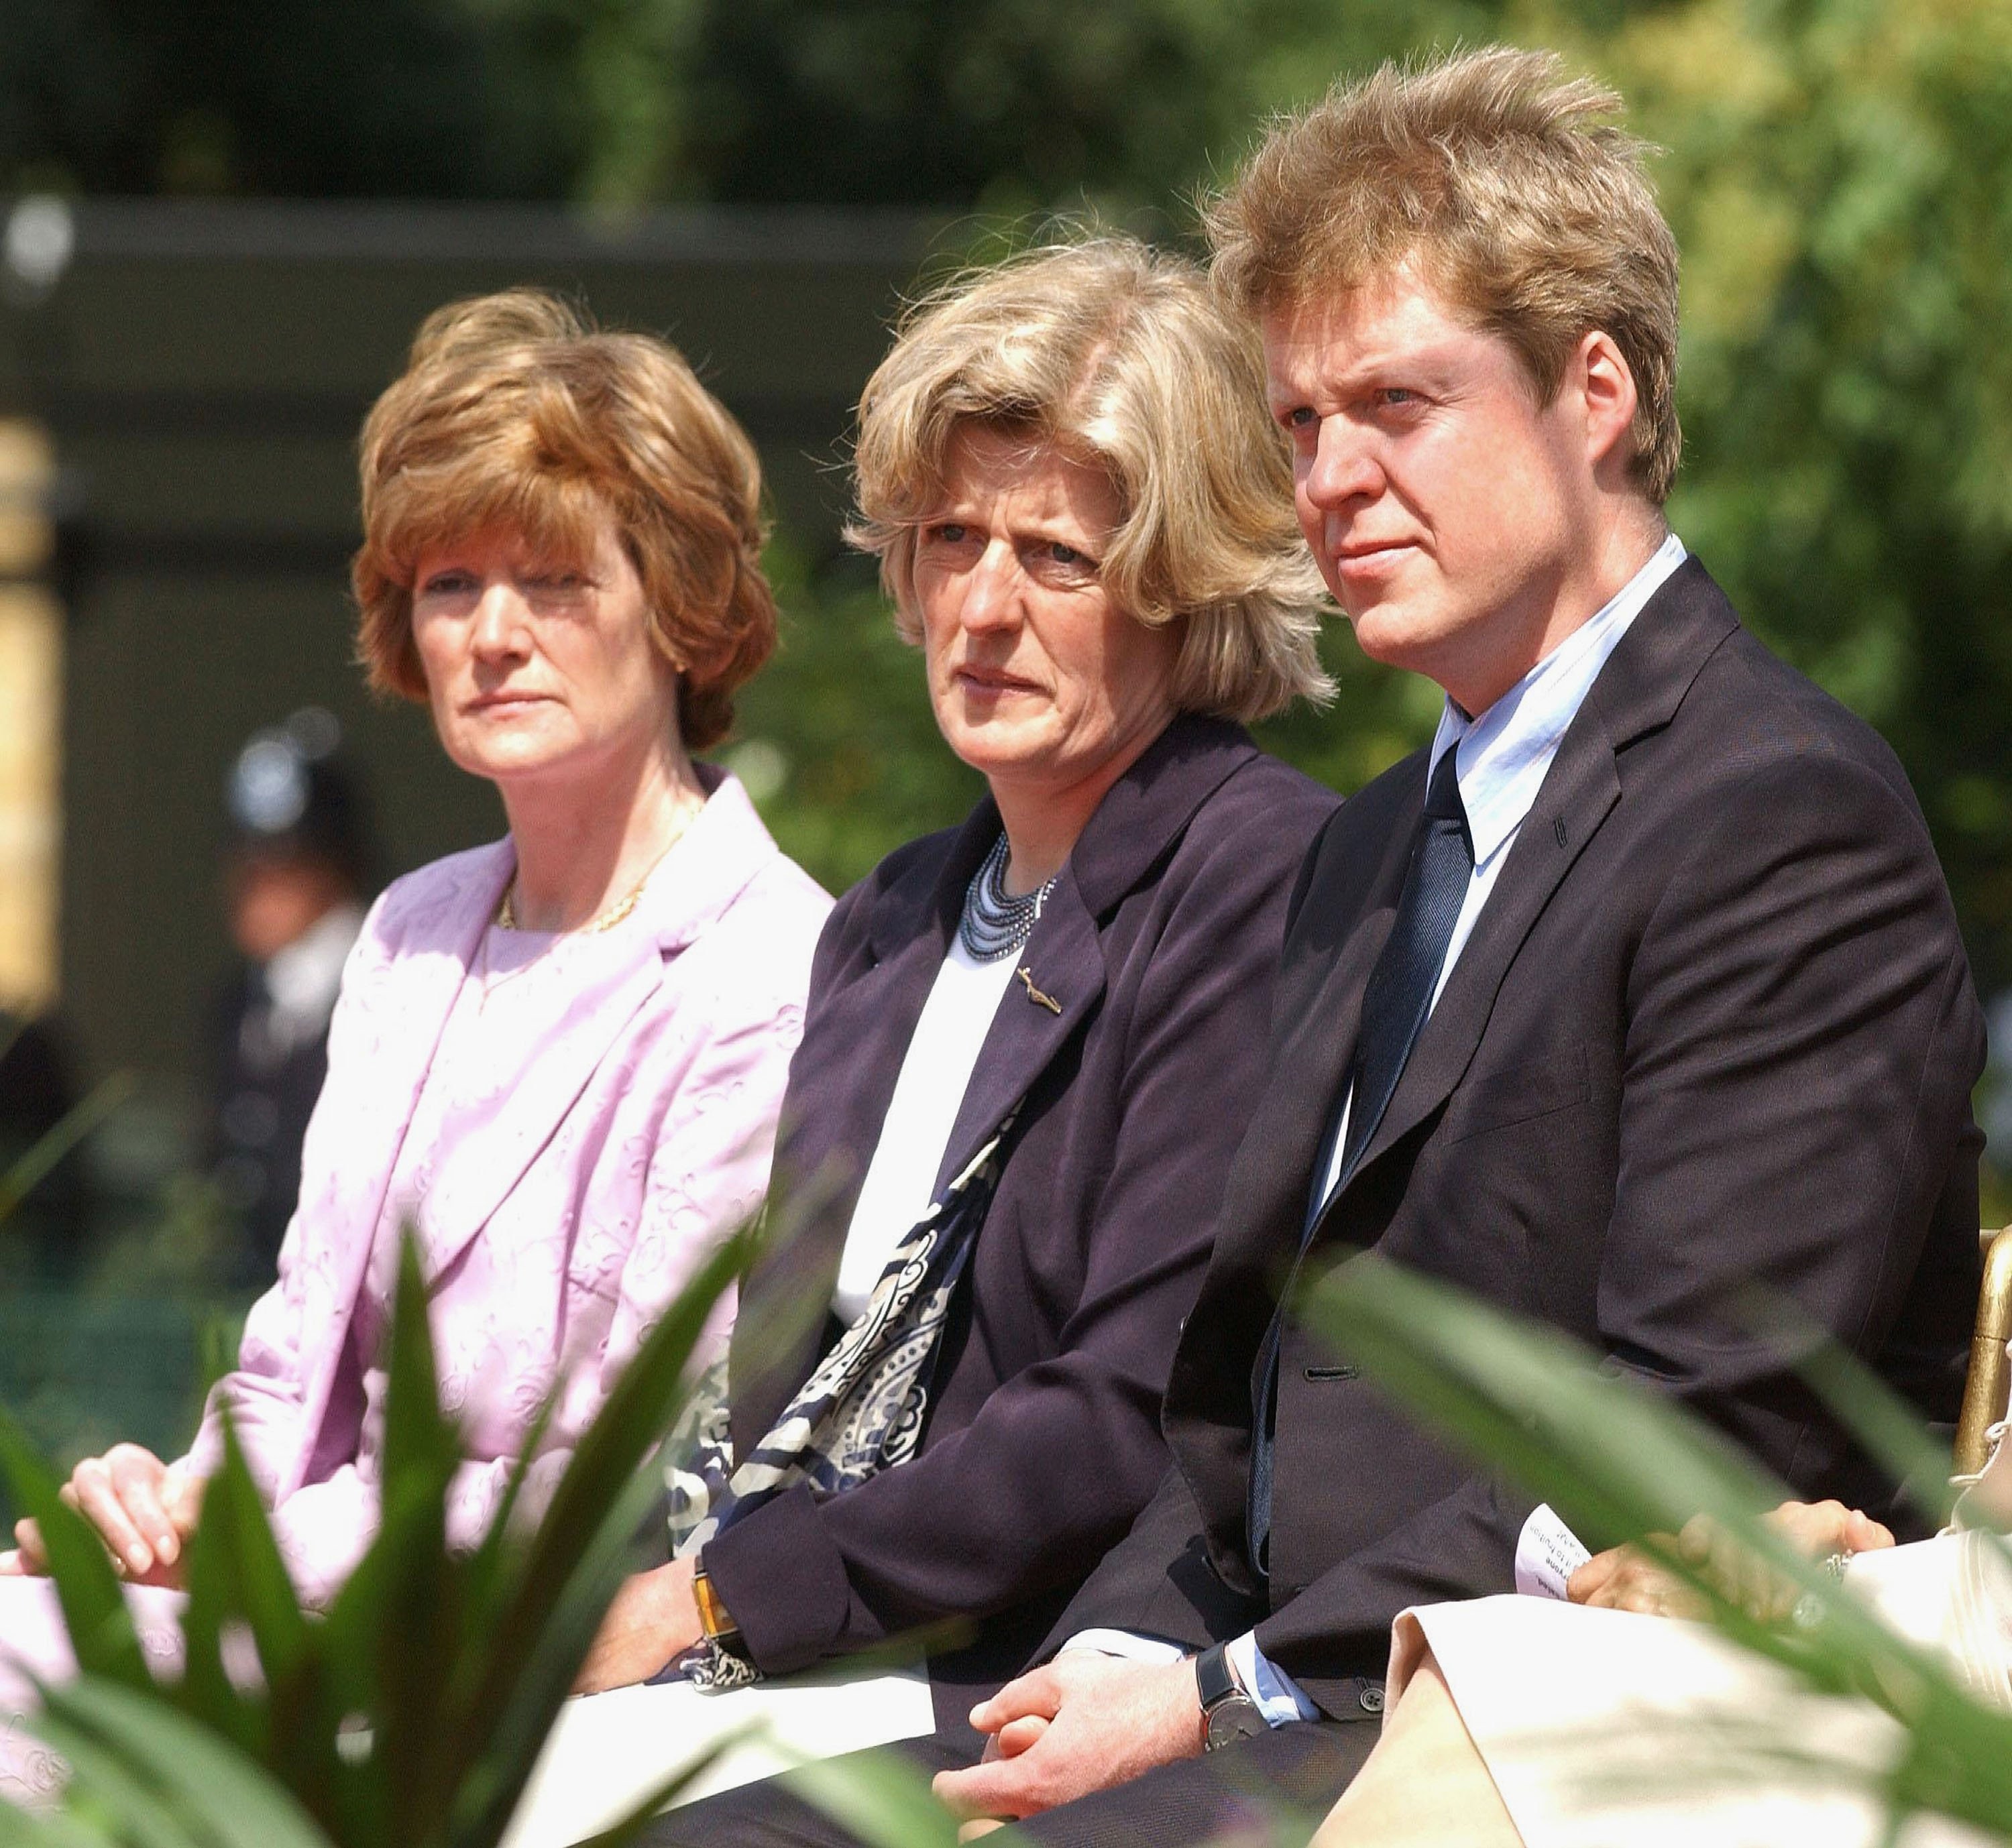 Lady Sarah McCorquodale, Lady Jane Fellows con su hermano, Earl Spencer, en la apertura de una fuente construida en memoria de Diana el 6 de julio de 2004 en Hyde Park, Londres. | Foto: Getty Images